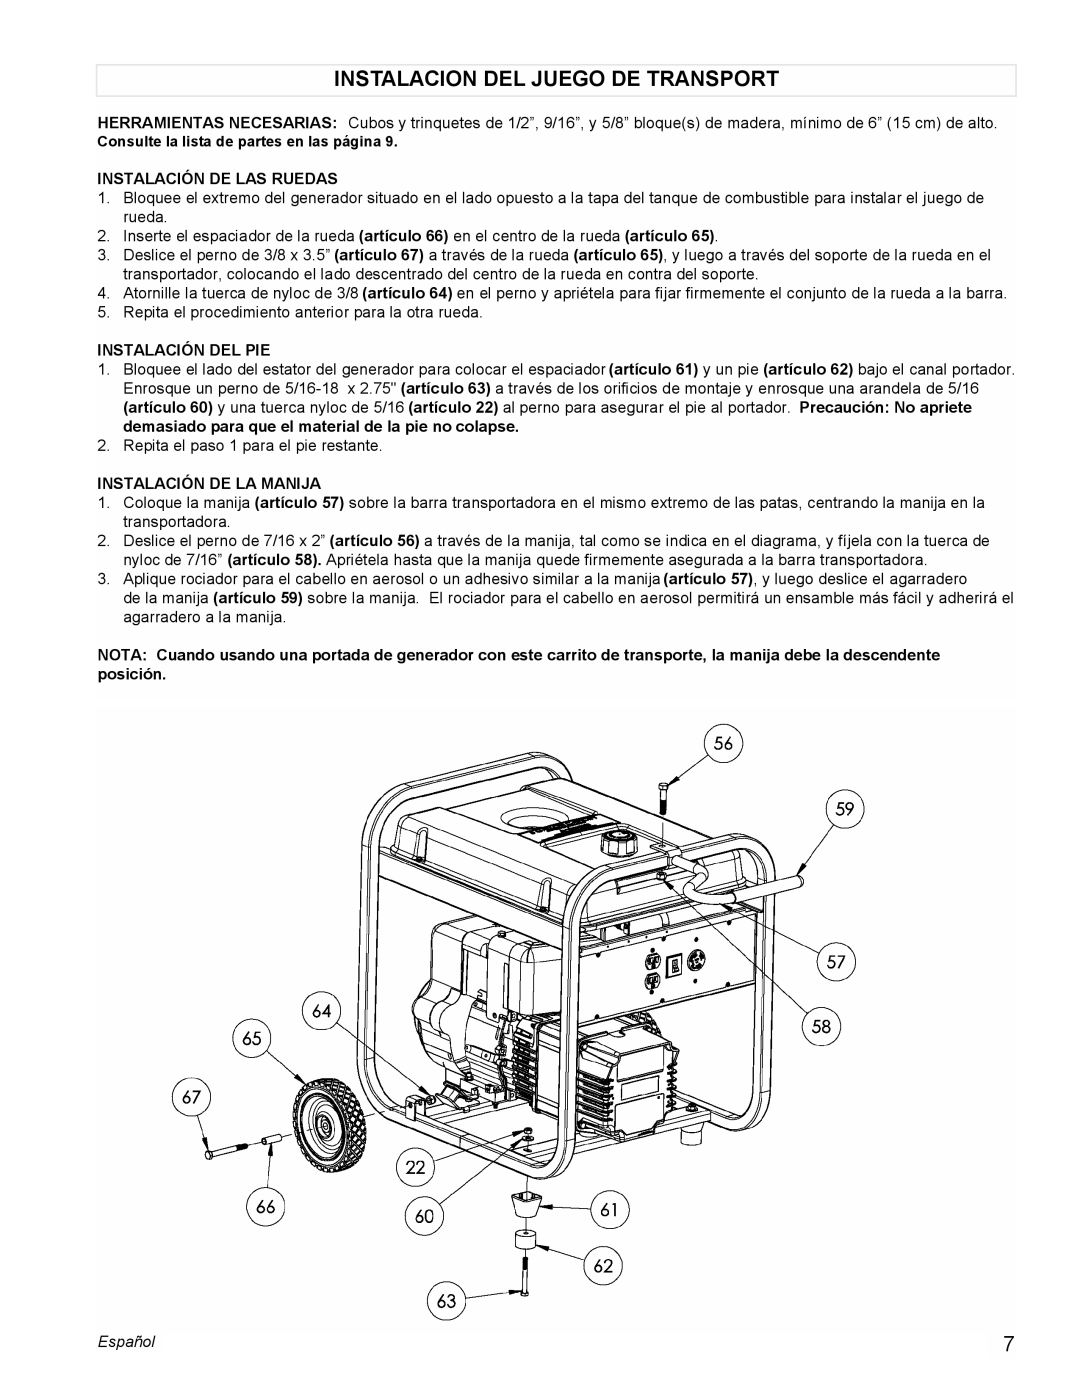 Powermate PC0525305 manual Instalacion Del Juego De Transport, Instalación De Las Ruedas, Instalación Del Pie, Español 